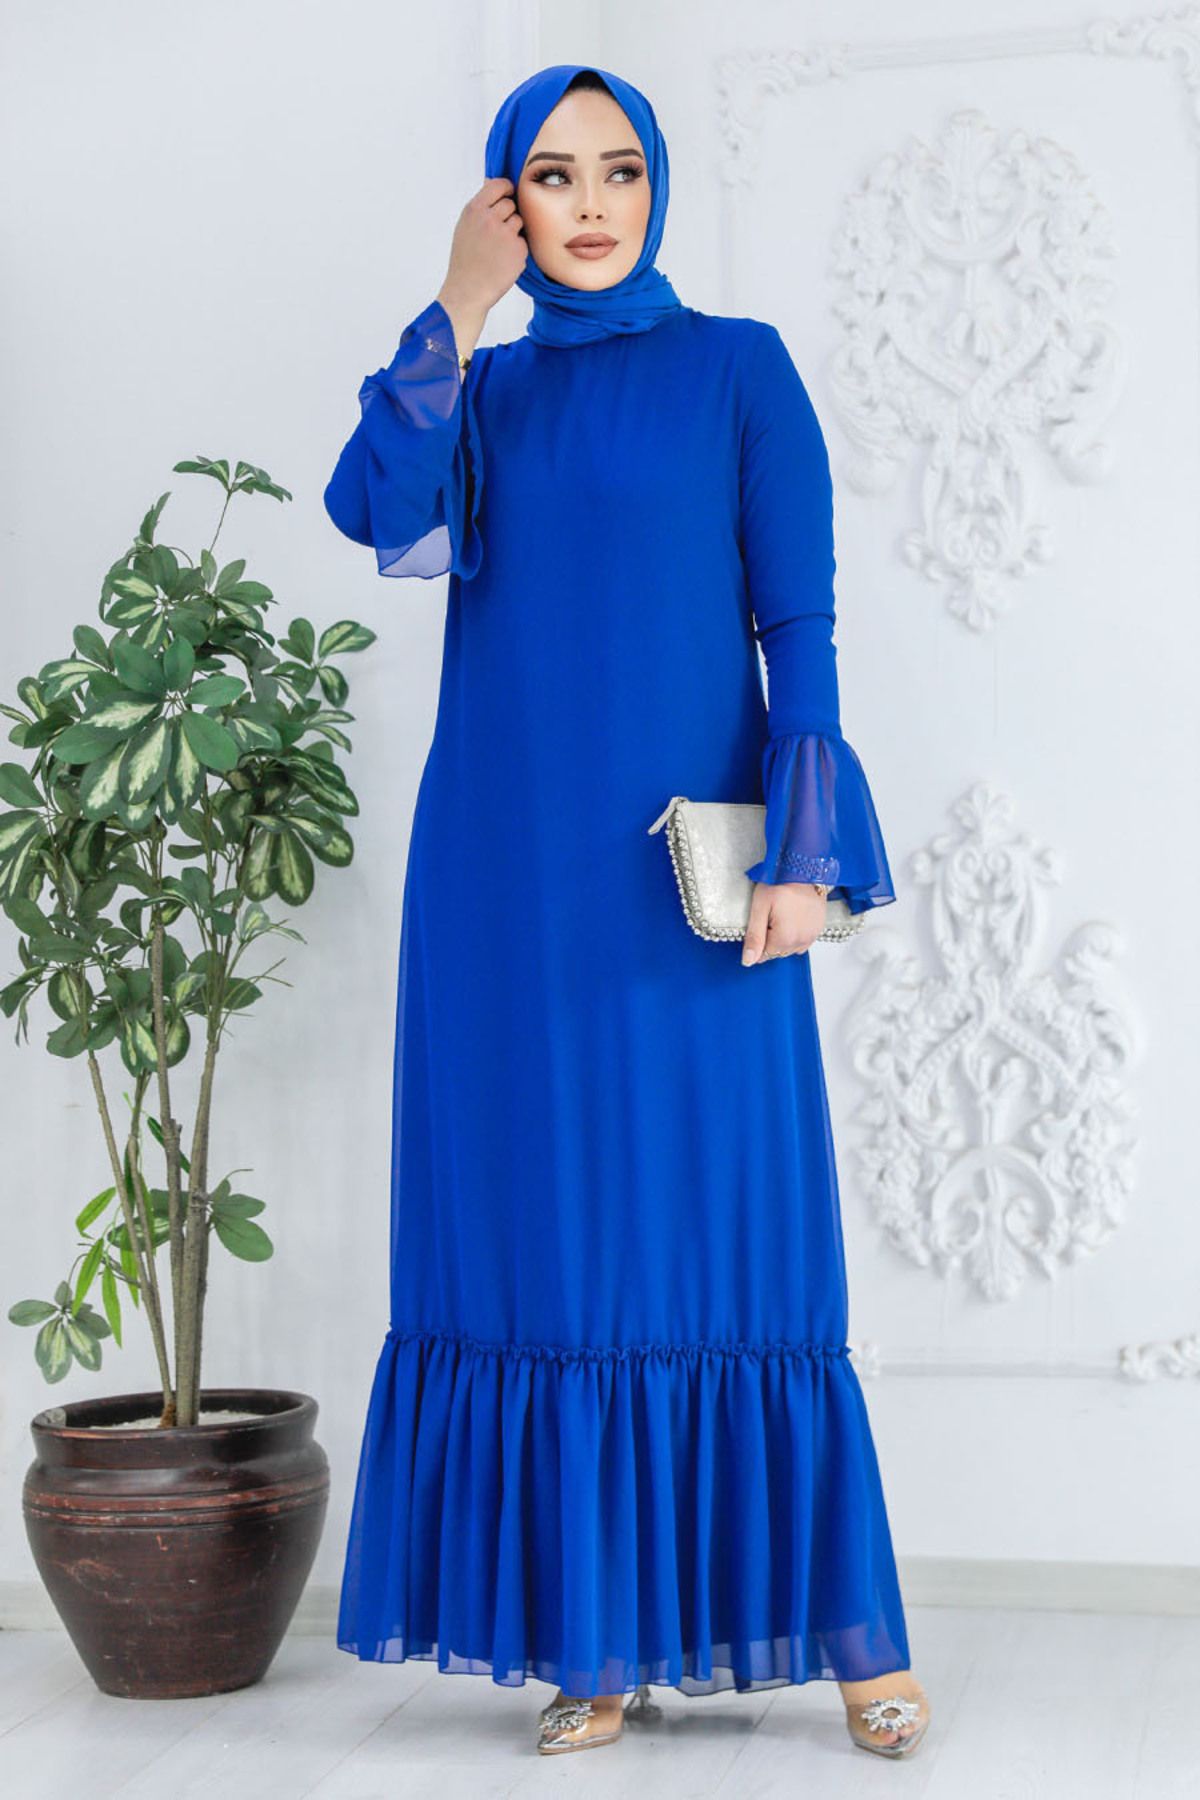 Neva Style - Kol Ucu Volanlı Sax Mavisi Tesettür Elbise 5729sx